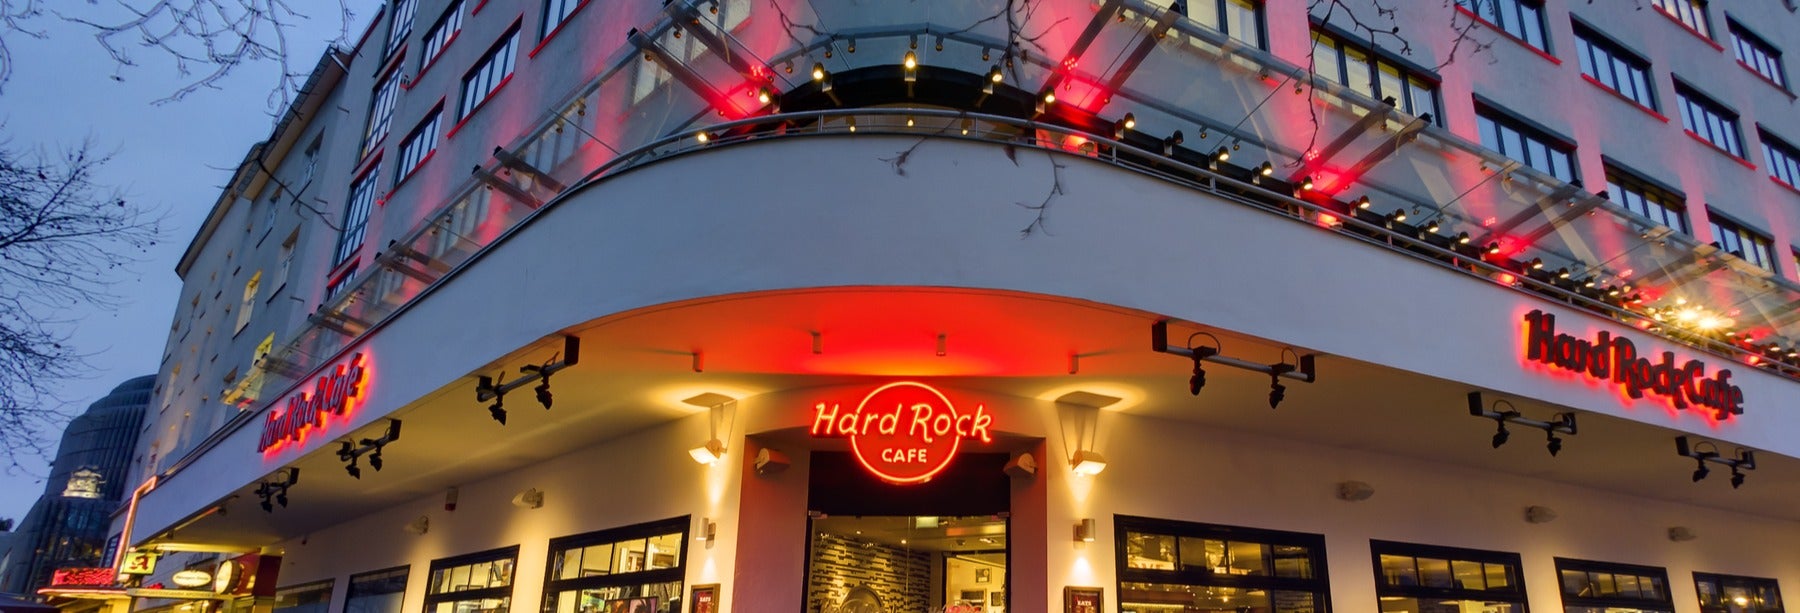 Hard Rock Cafe Berlin sem filas